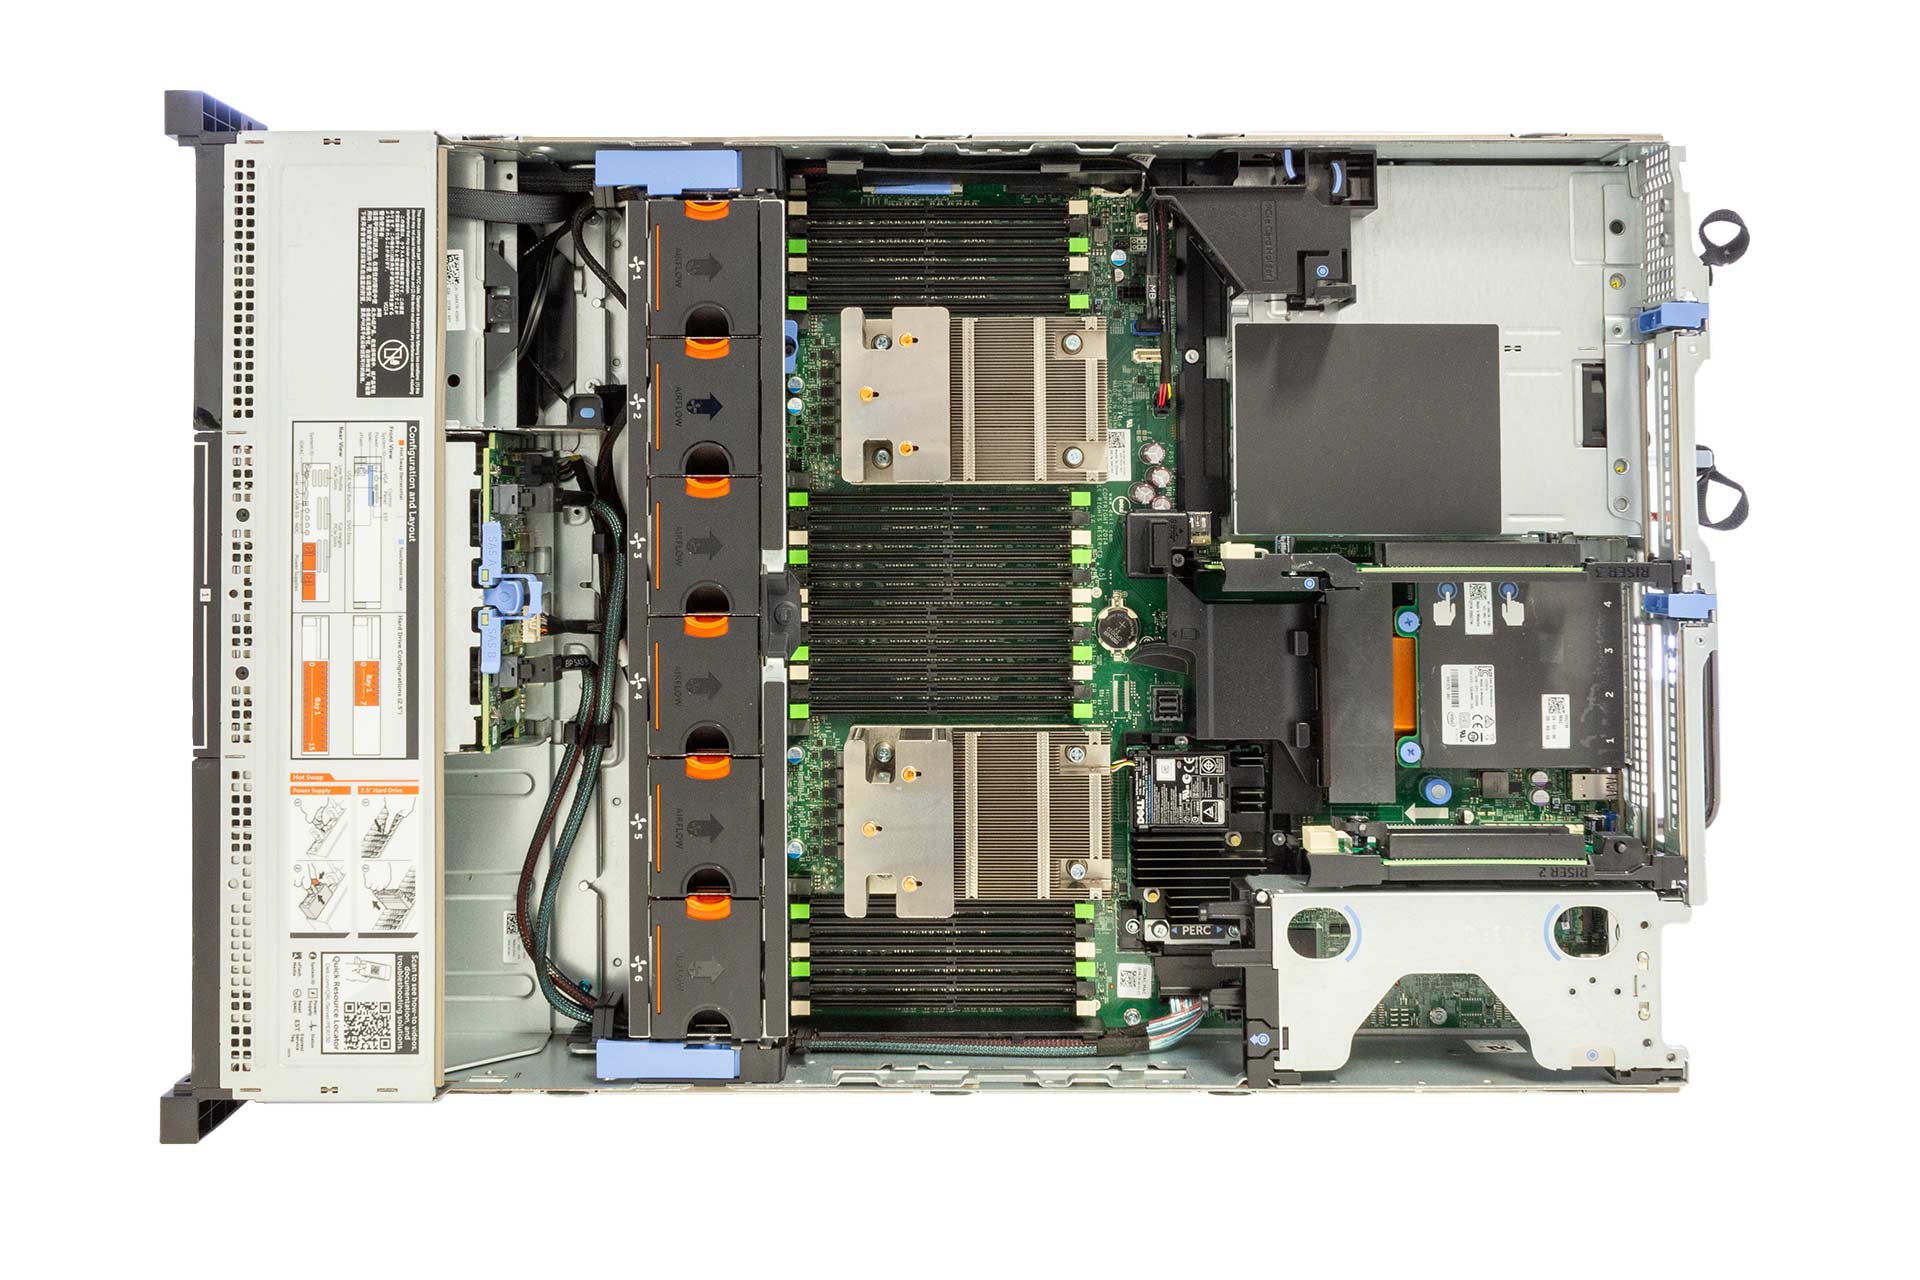 Dell PowerEdge R730 Rack-Server, E5-2650v3 2.3GHz, 10-Core, noRAM, 8x SFF, H730 Mini, 2x 750W PSU